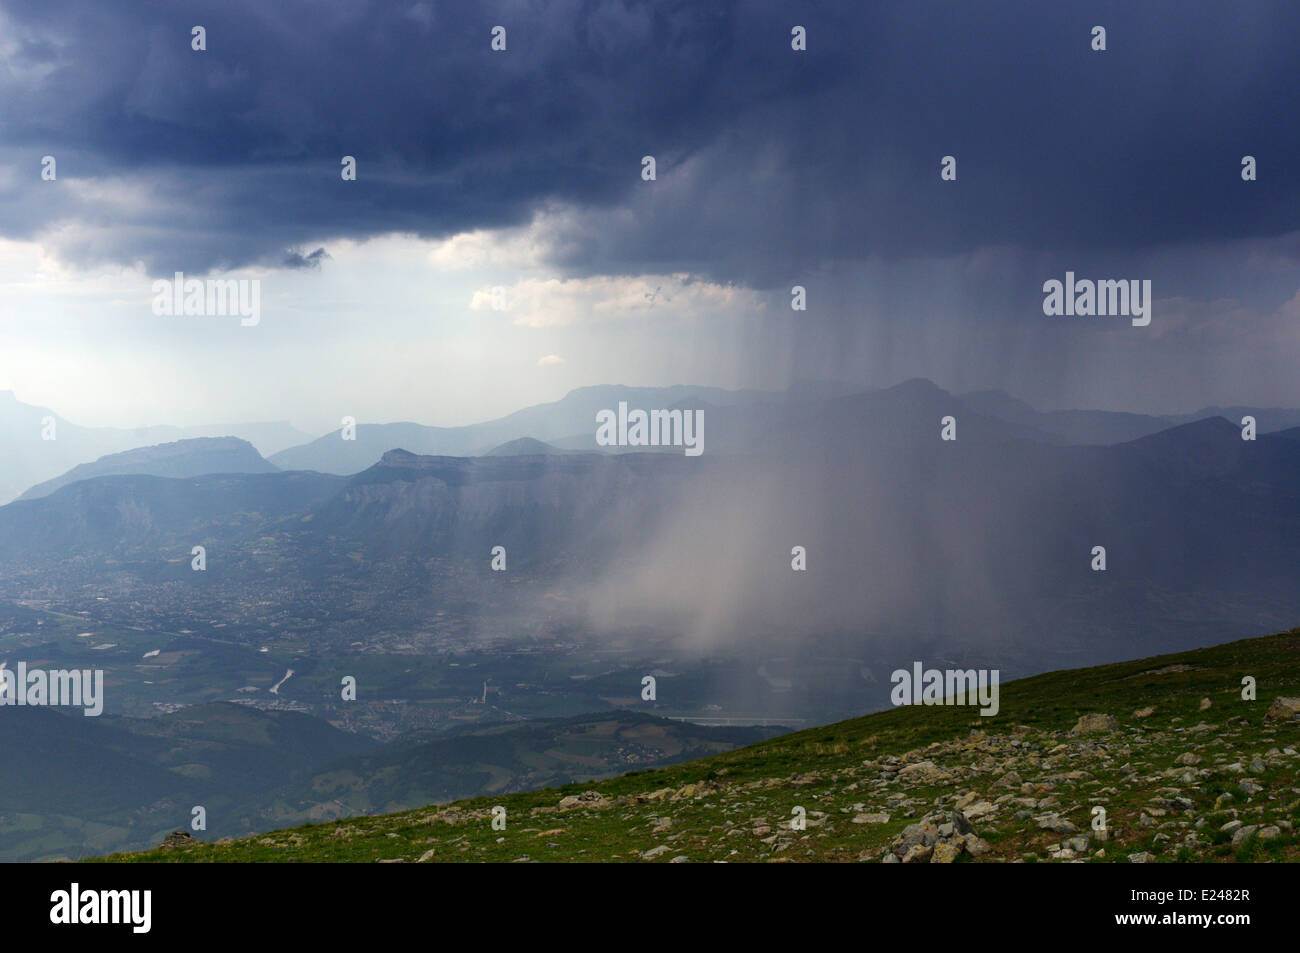 Ein Wolkenbruch fallen im Tal von Hoch in den Belledonne Spektrum der Berg in der Nähe von Grenoble in Frankreich gesehen Stockfoto